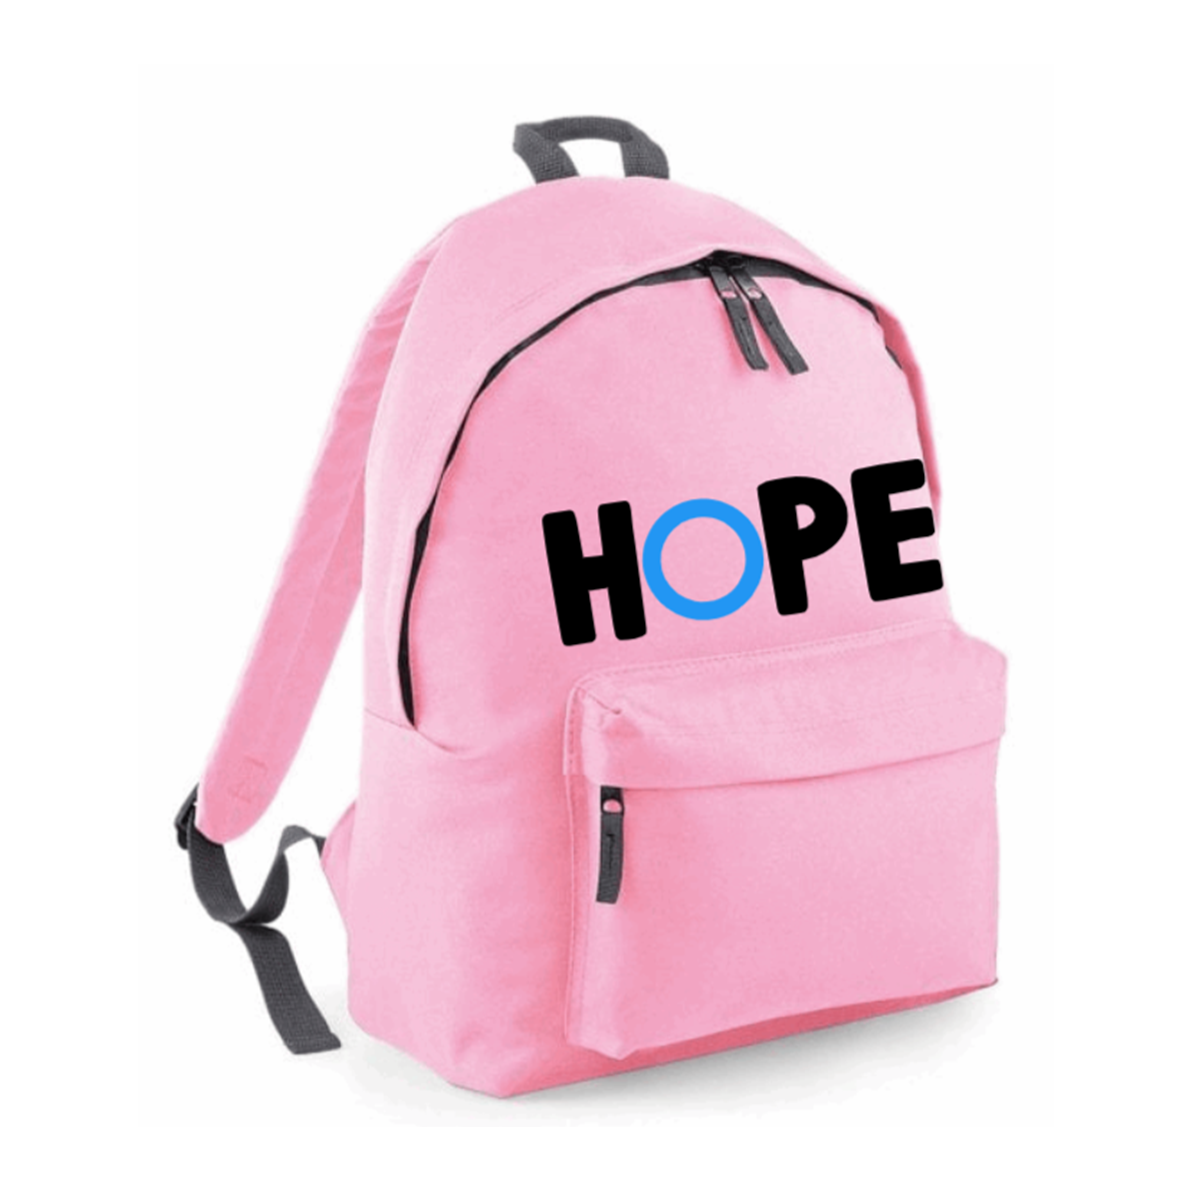 Hope Backpack